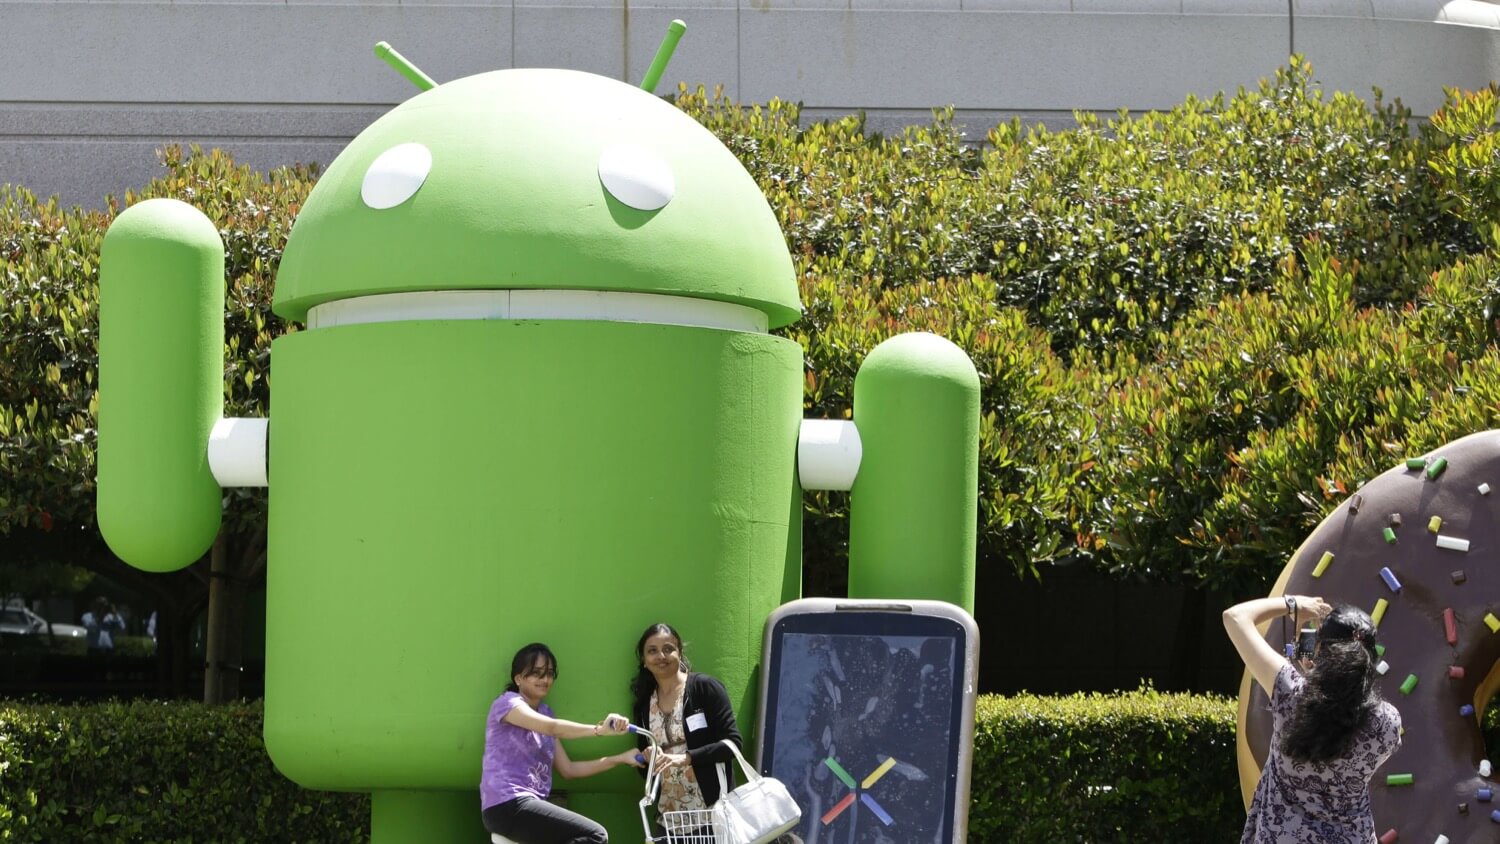 Gli ingegneri di Google sono pronti a rilasciare la sostituzione Android dopo tre anni